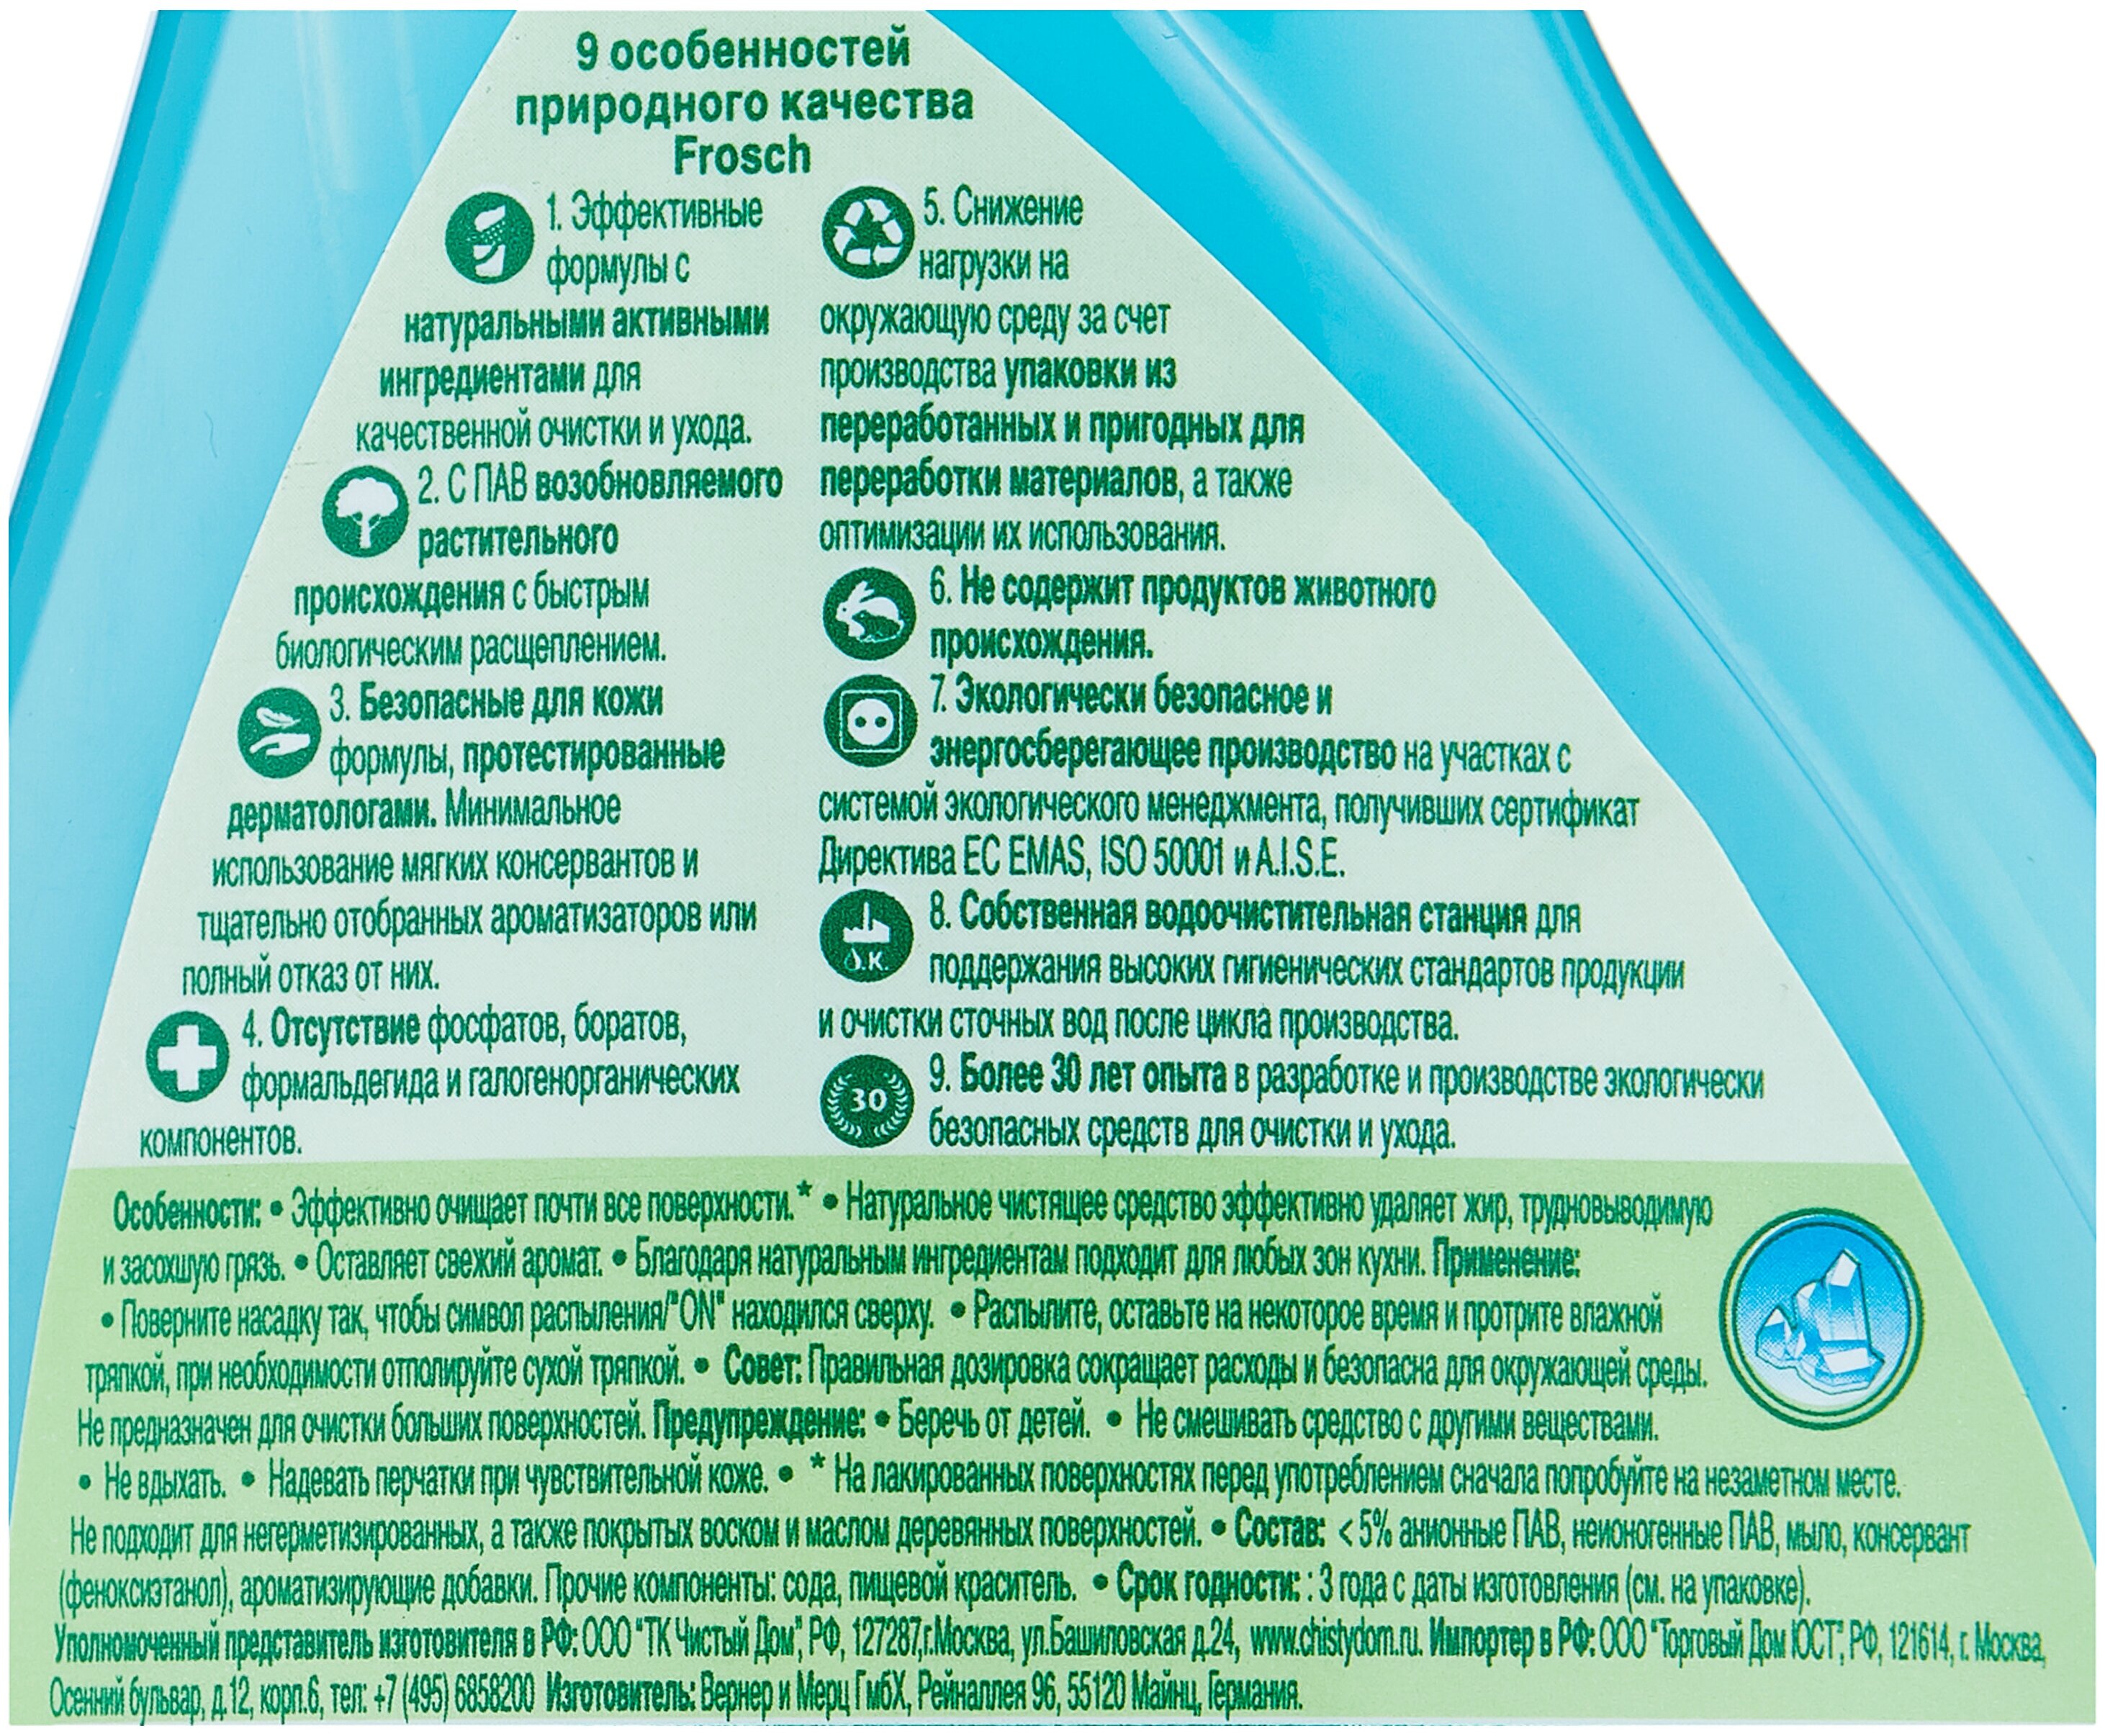 Универсальное чистящее средство Сода Frosch - содержит: соду